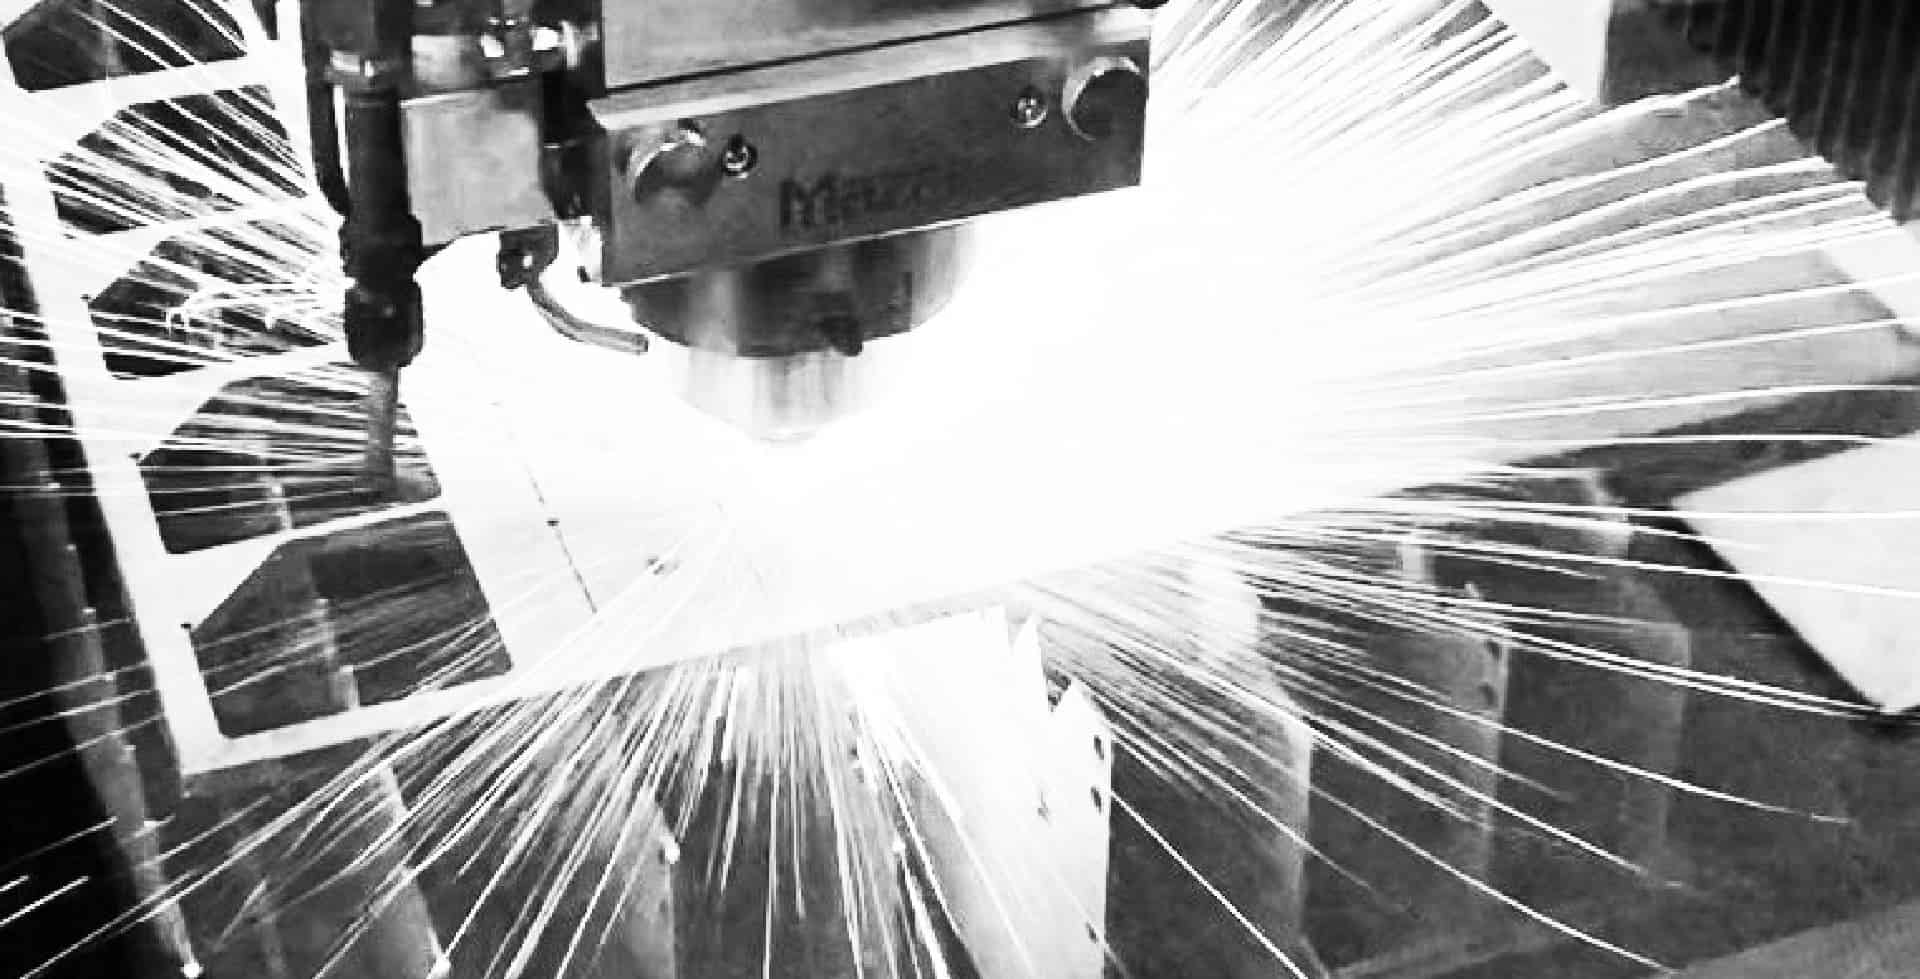 Laser cutting sheet metal